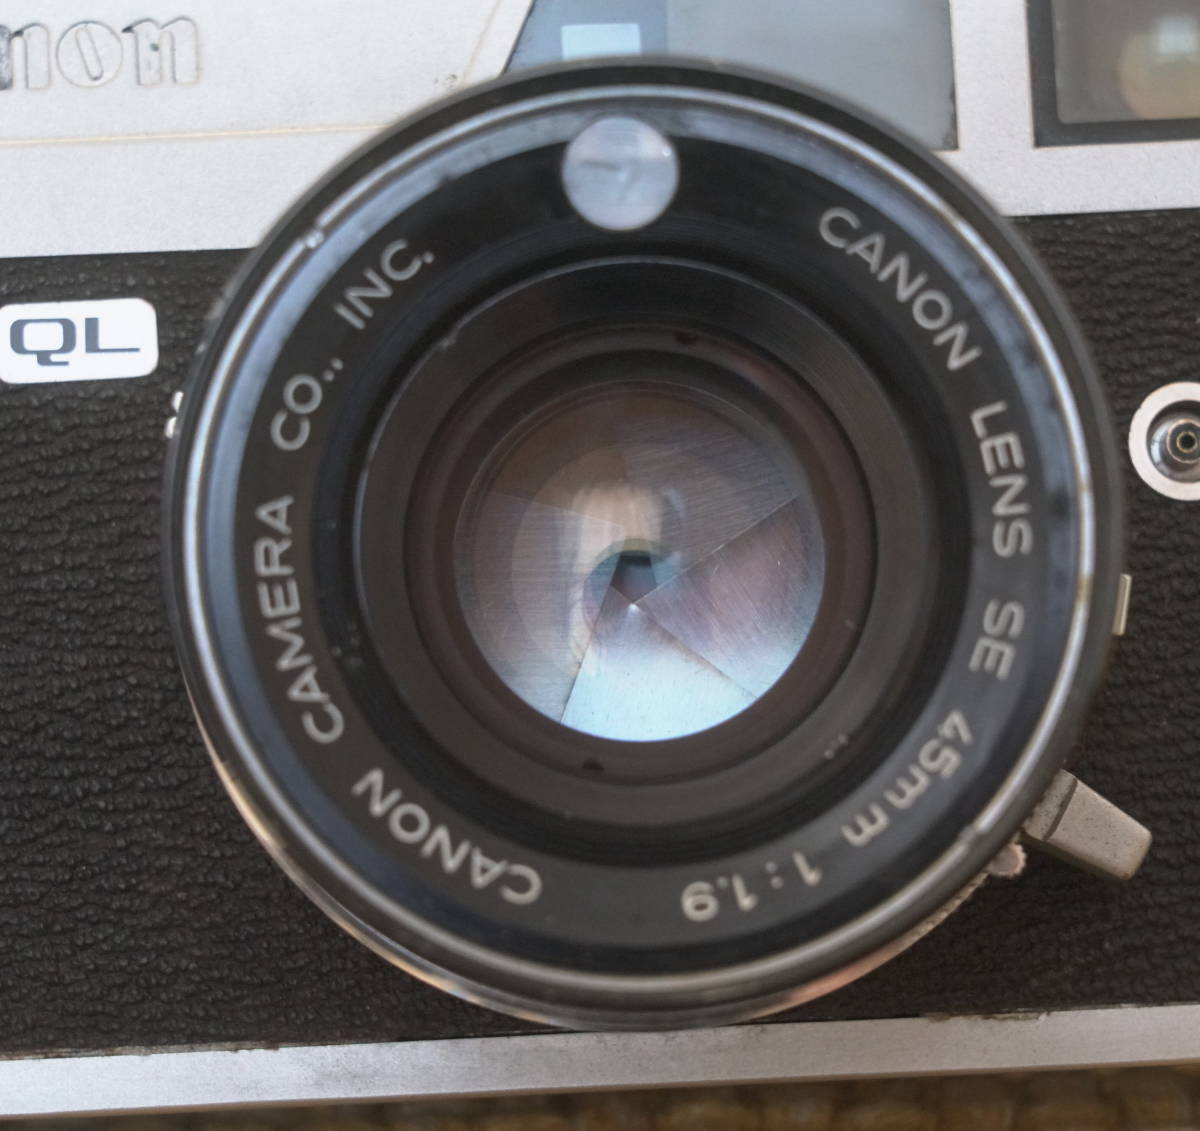 ジャンク品 Canon Canonet QL19 キャノン キャノネット レンジファインダー フィルムカメラ